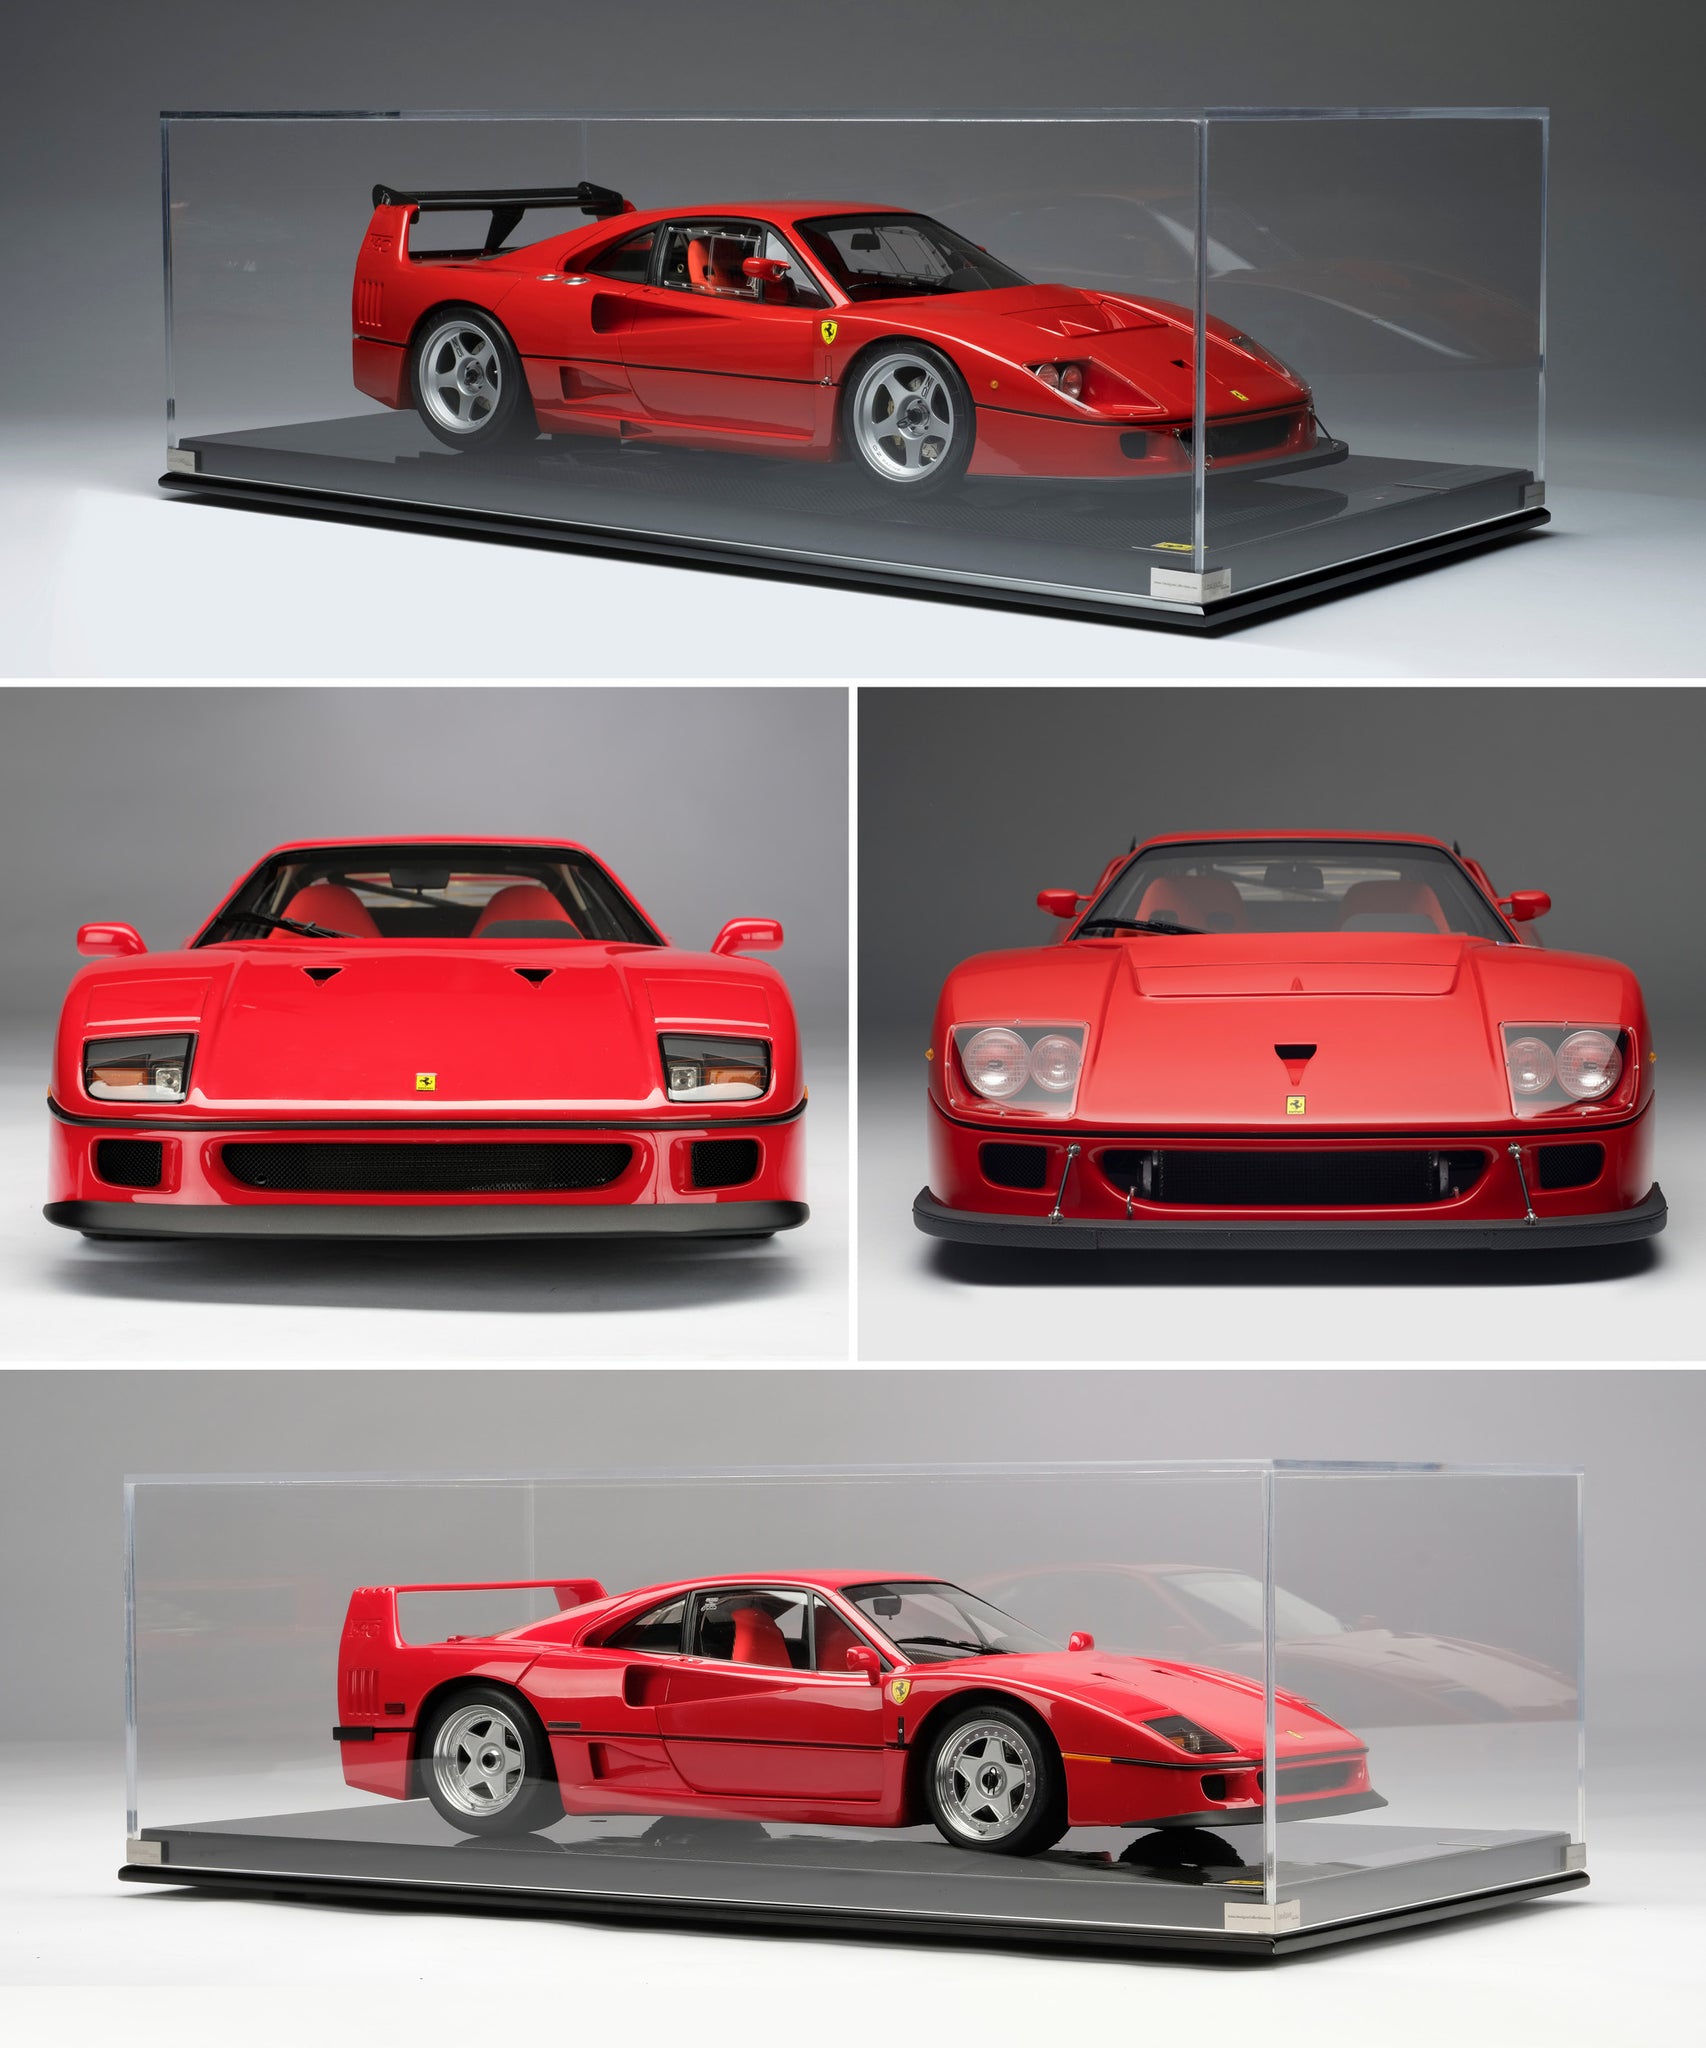 Ferrari F40 US Specification at 1:8 scale and Ferrari F40 Competizione at 1:8 scale